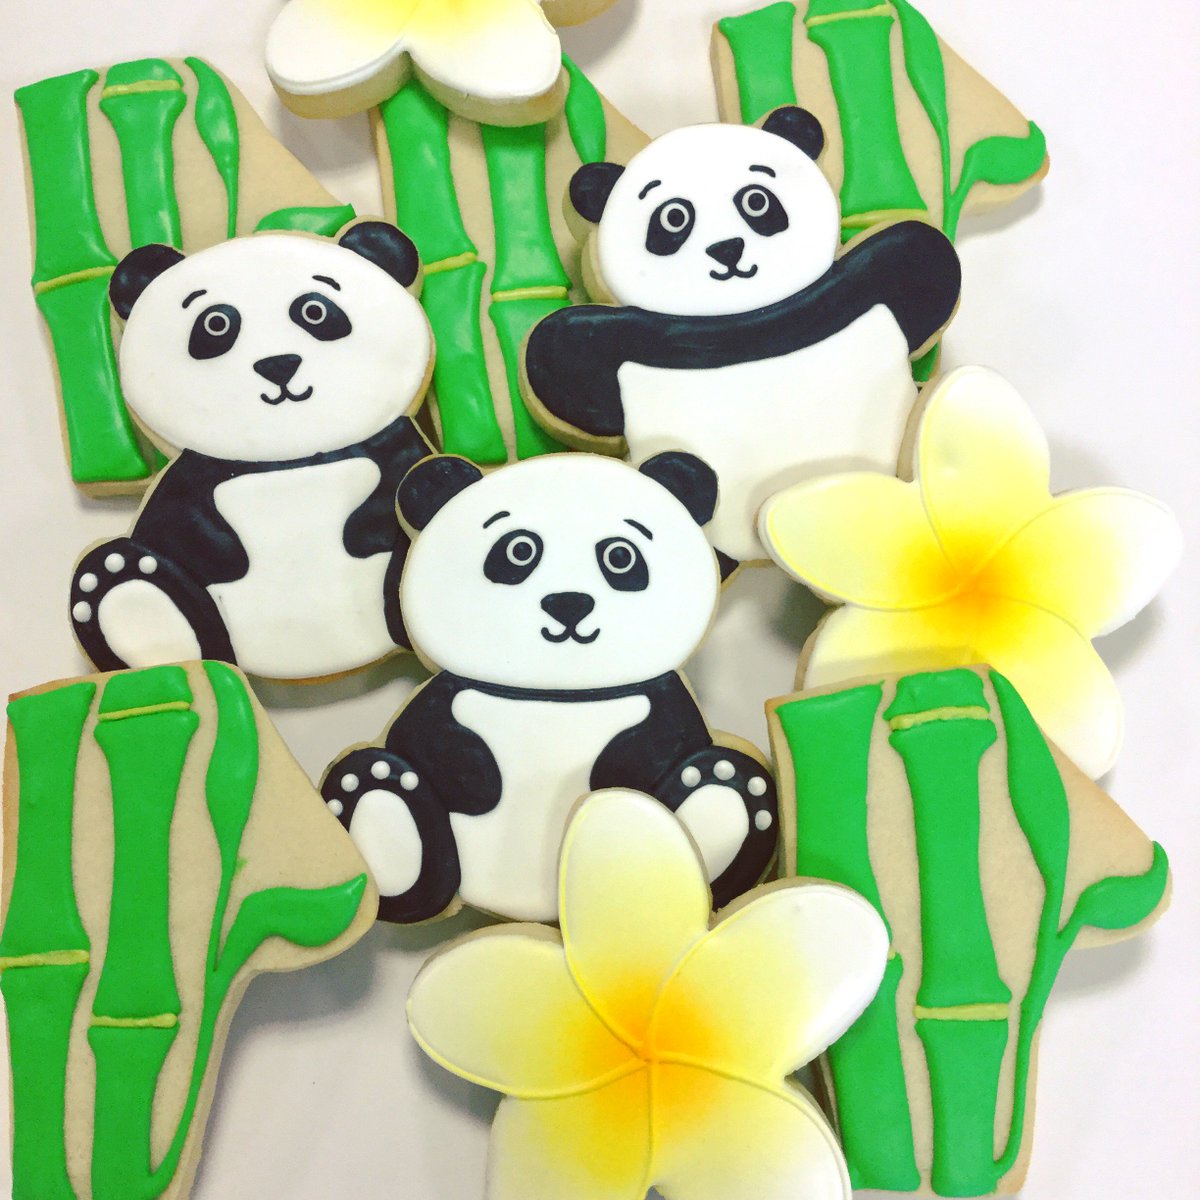 Almost too cute to eat- almost 😋😜
#panda #pandacookies #bamboocookies #plumeriaflower #flowercookies #customcookies #cakeitecture